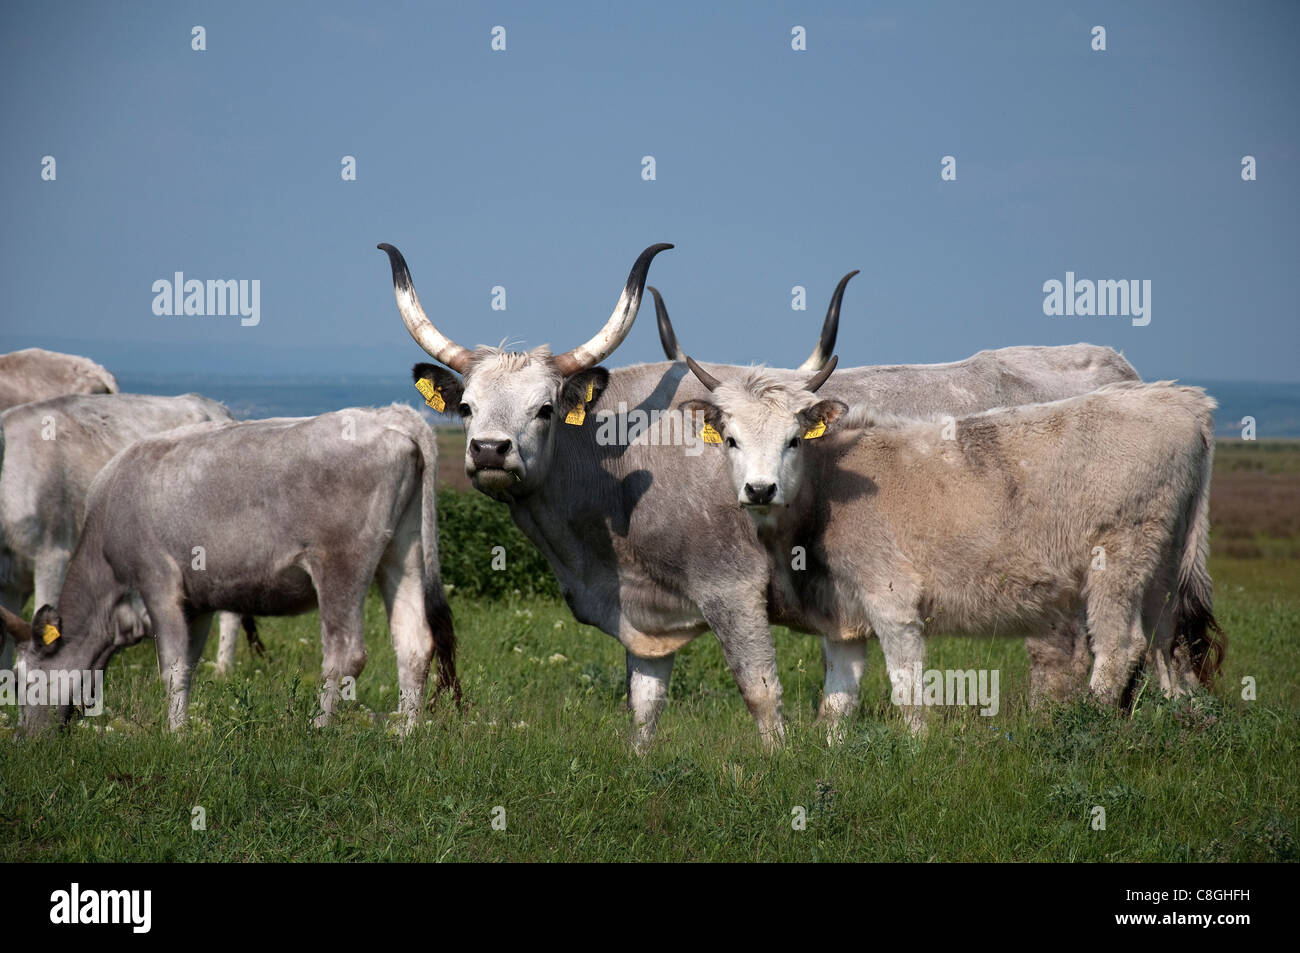 Le bétail domestique, race : Steppe hongroise (Bos primigenius, Bos taurus). Plusieurs individus d'âge différent. Banque D'Images